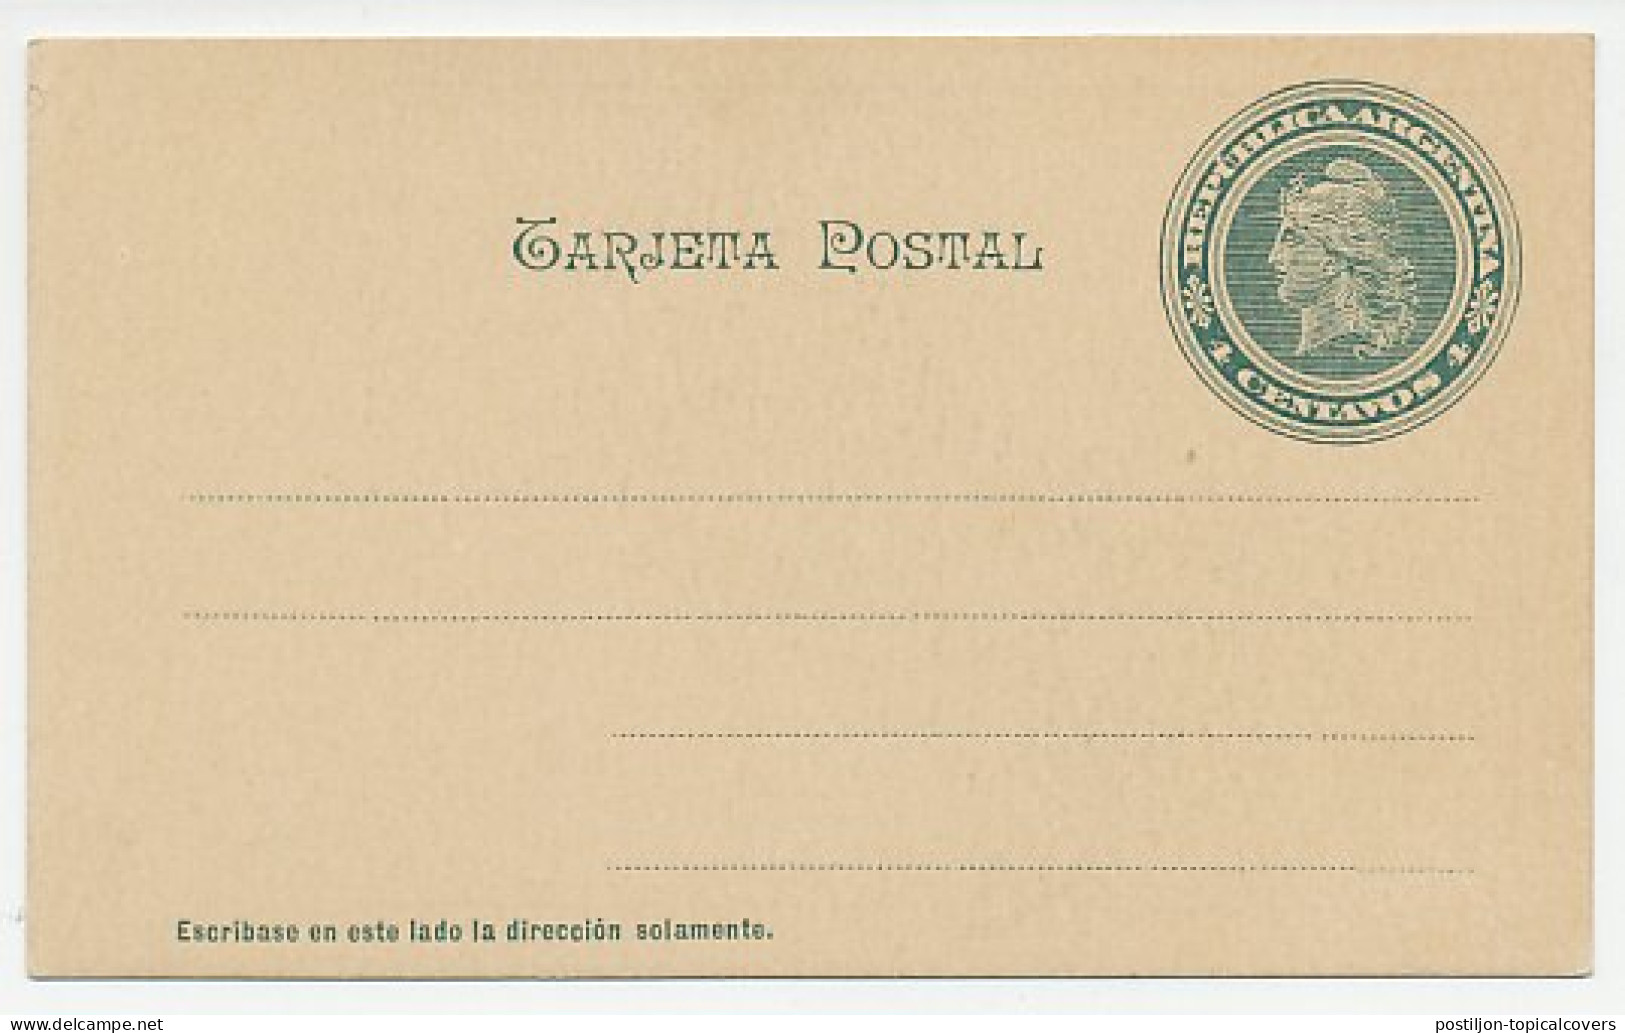 Postal Stationery Argentina Jujuy Province - Aardrijkskunde